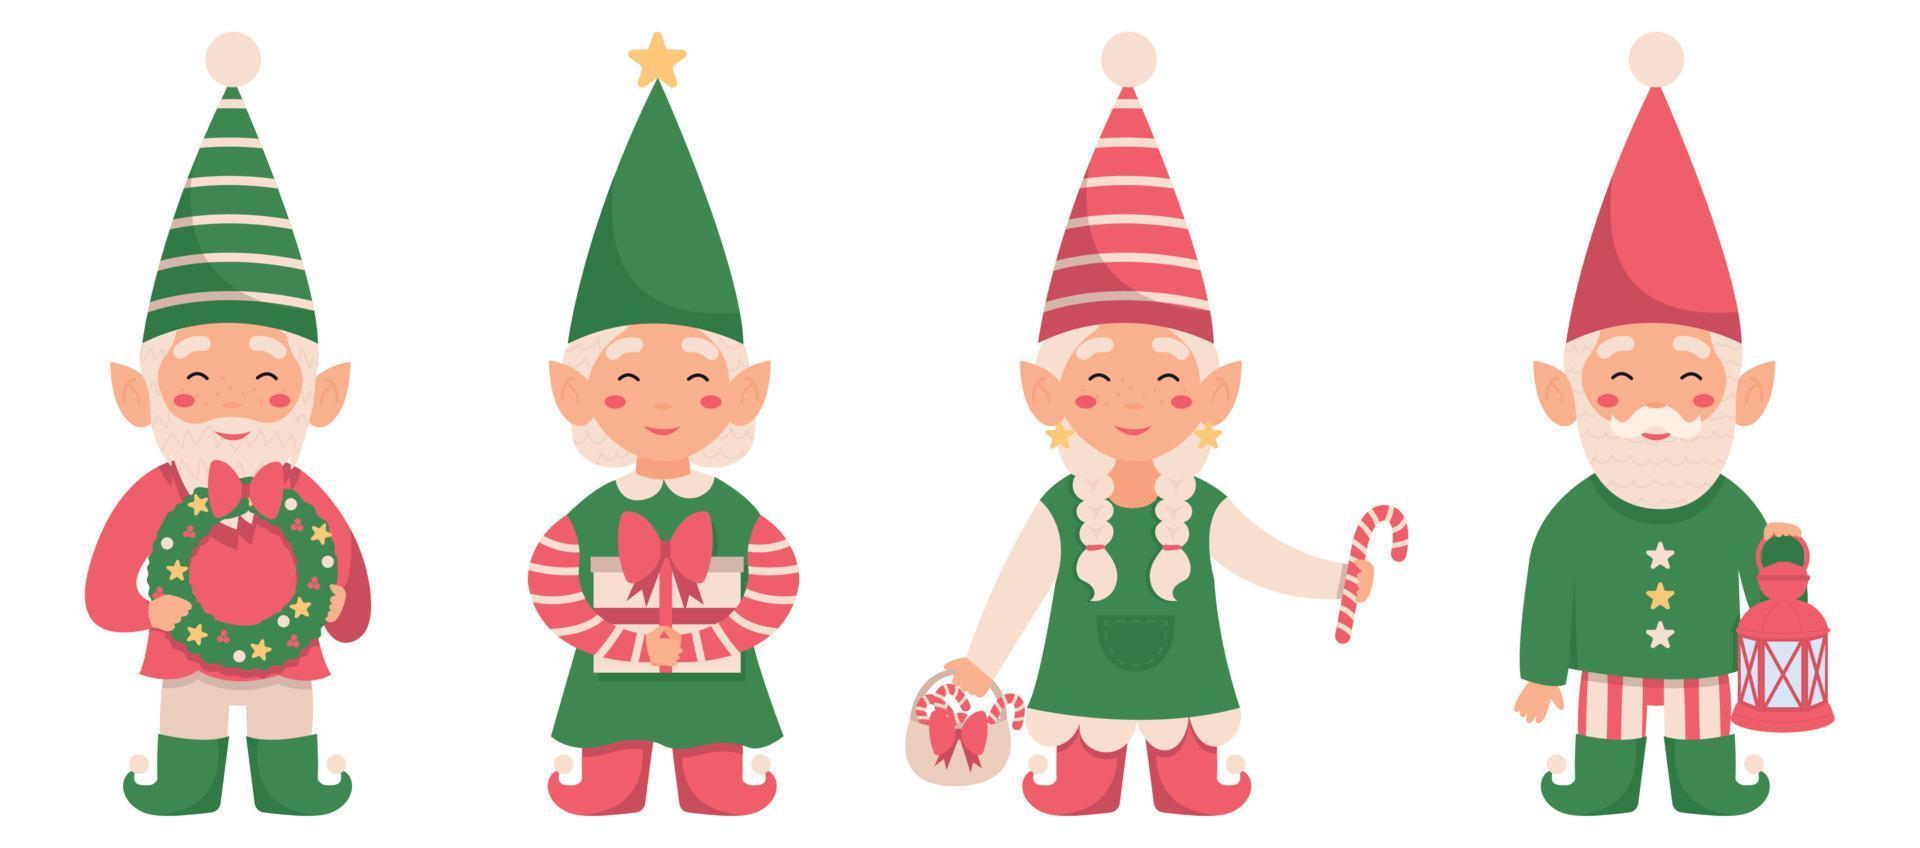 insieme di vettore dello gnomo di natale divertente isolato su priorità bassa bianca. 4 elfi di Babbo Natale con una corona, un regalo, lecca lecca e una lanterna.